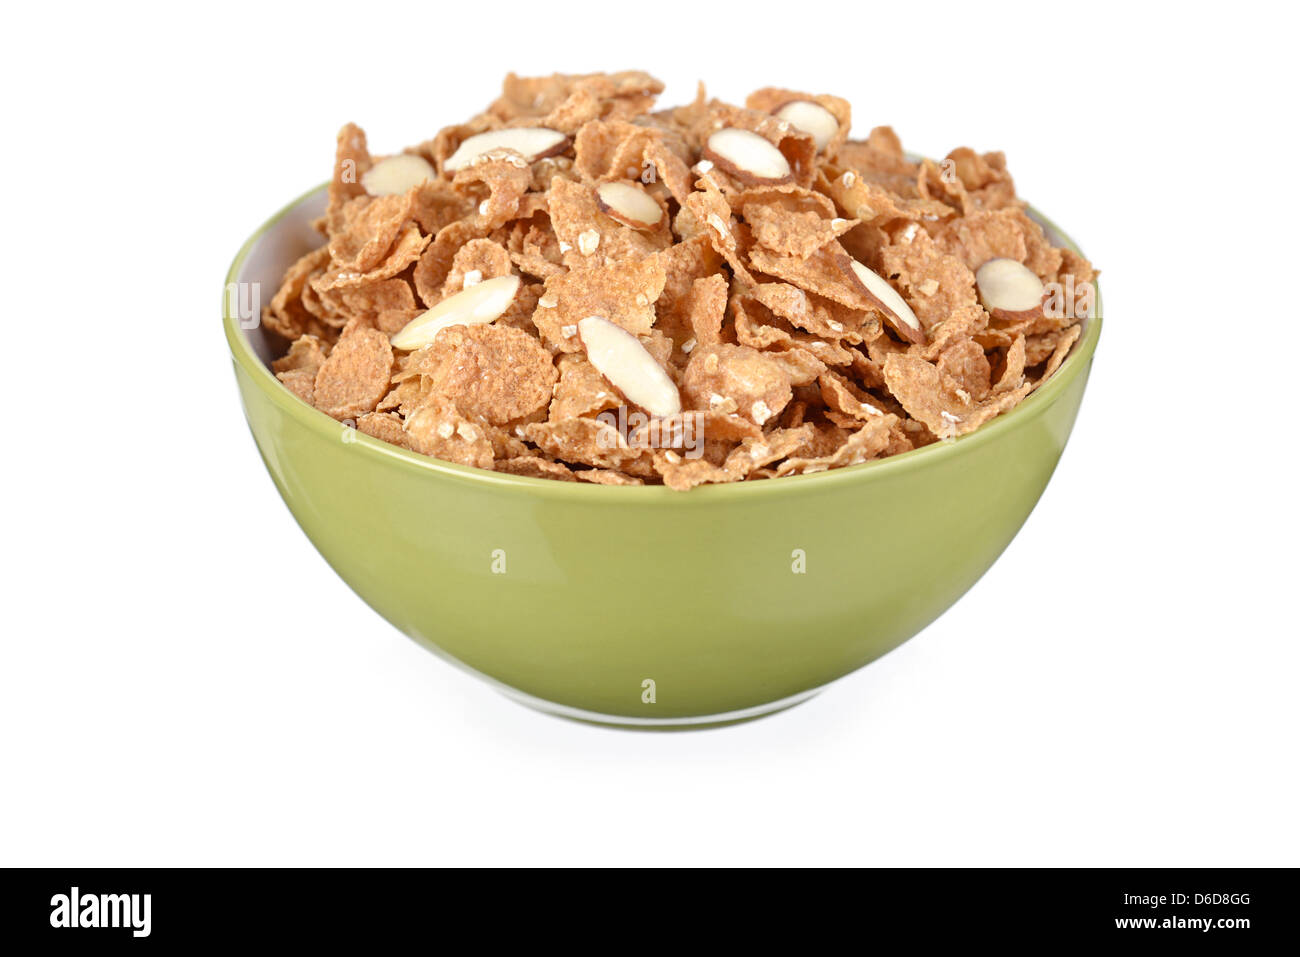 Cereali, cereali per la prima colazione di scaglie di mandorle Foto Stock